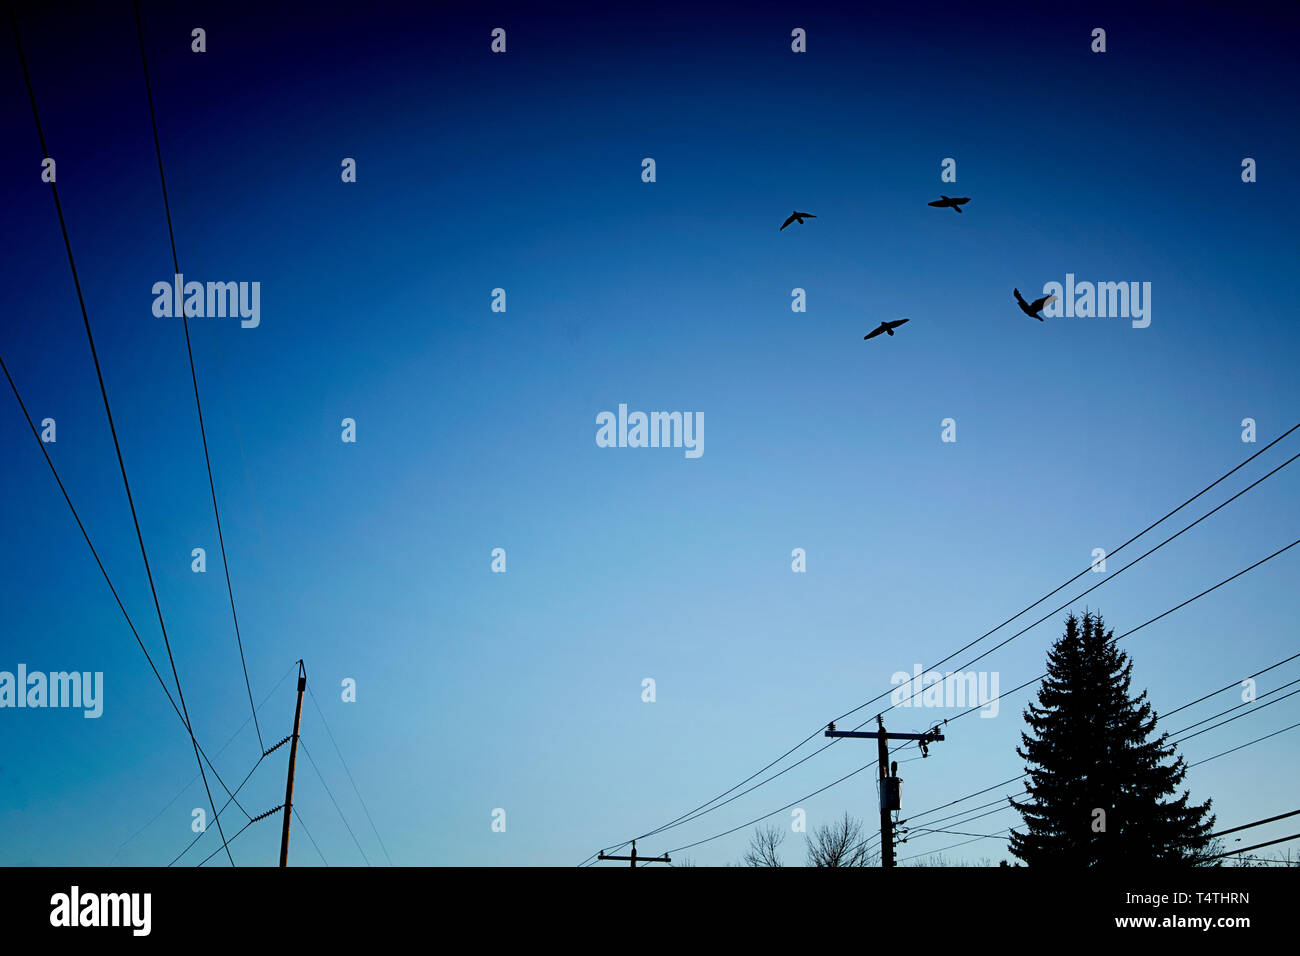 Vögel fliegen über Stromleitungen in einem blauen Himmel Stockfoto